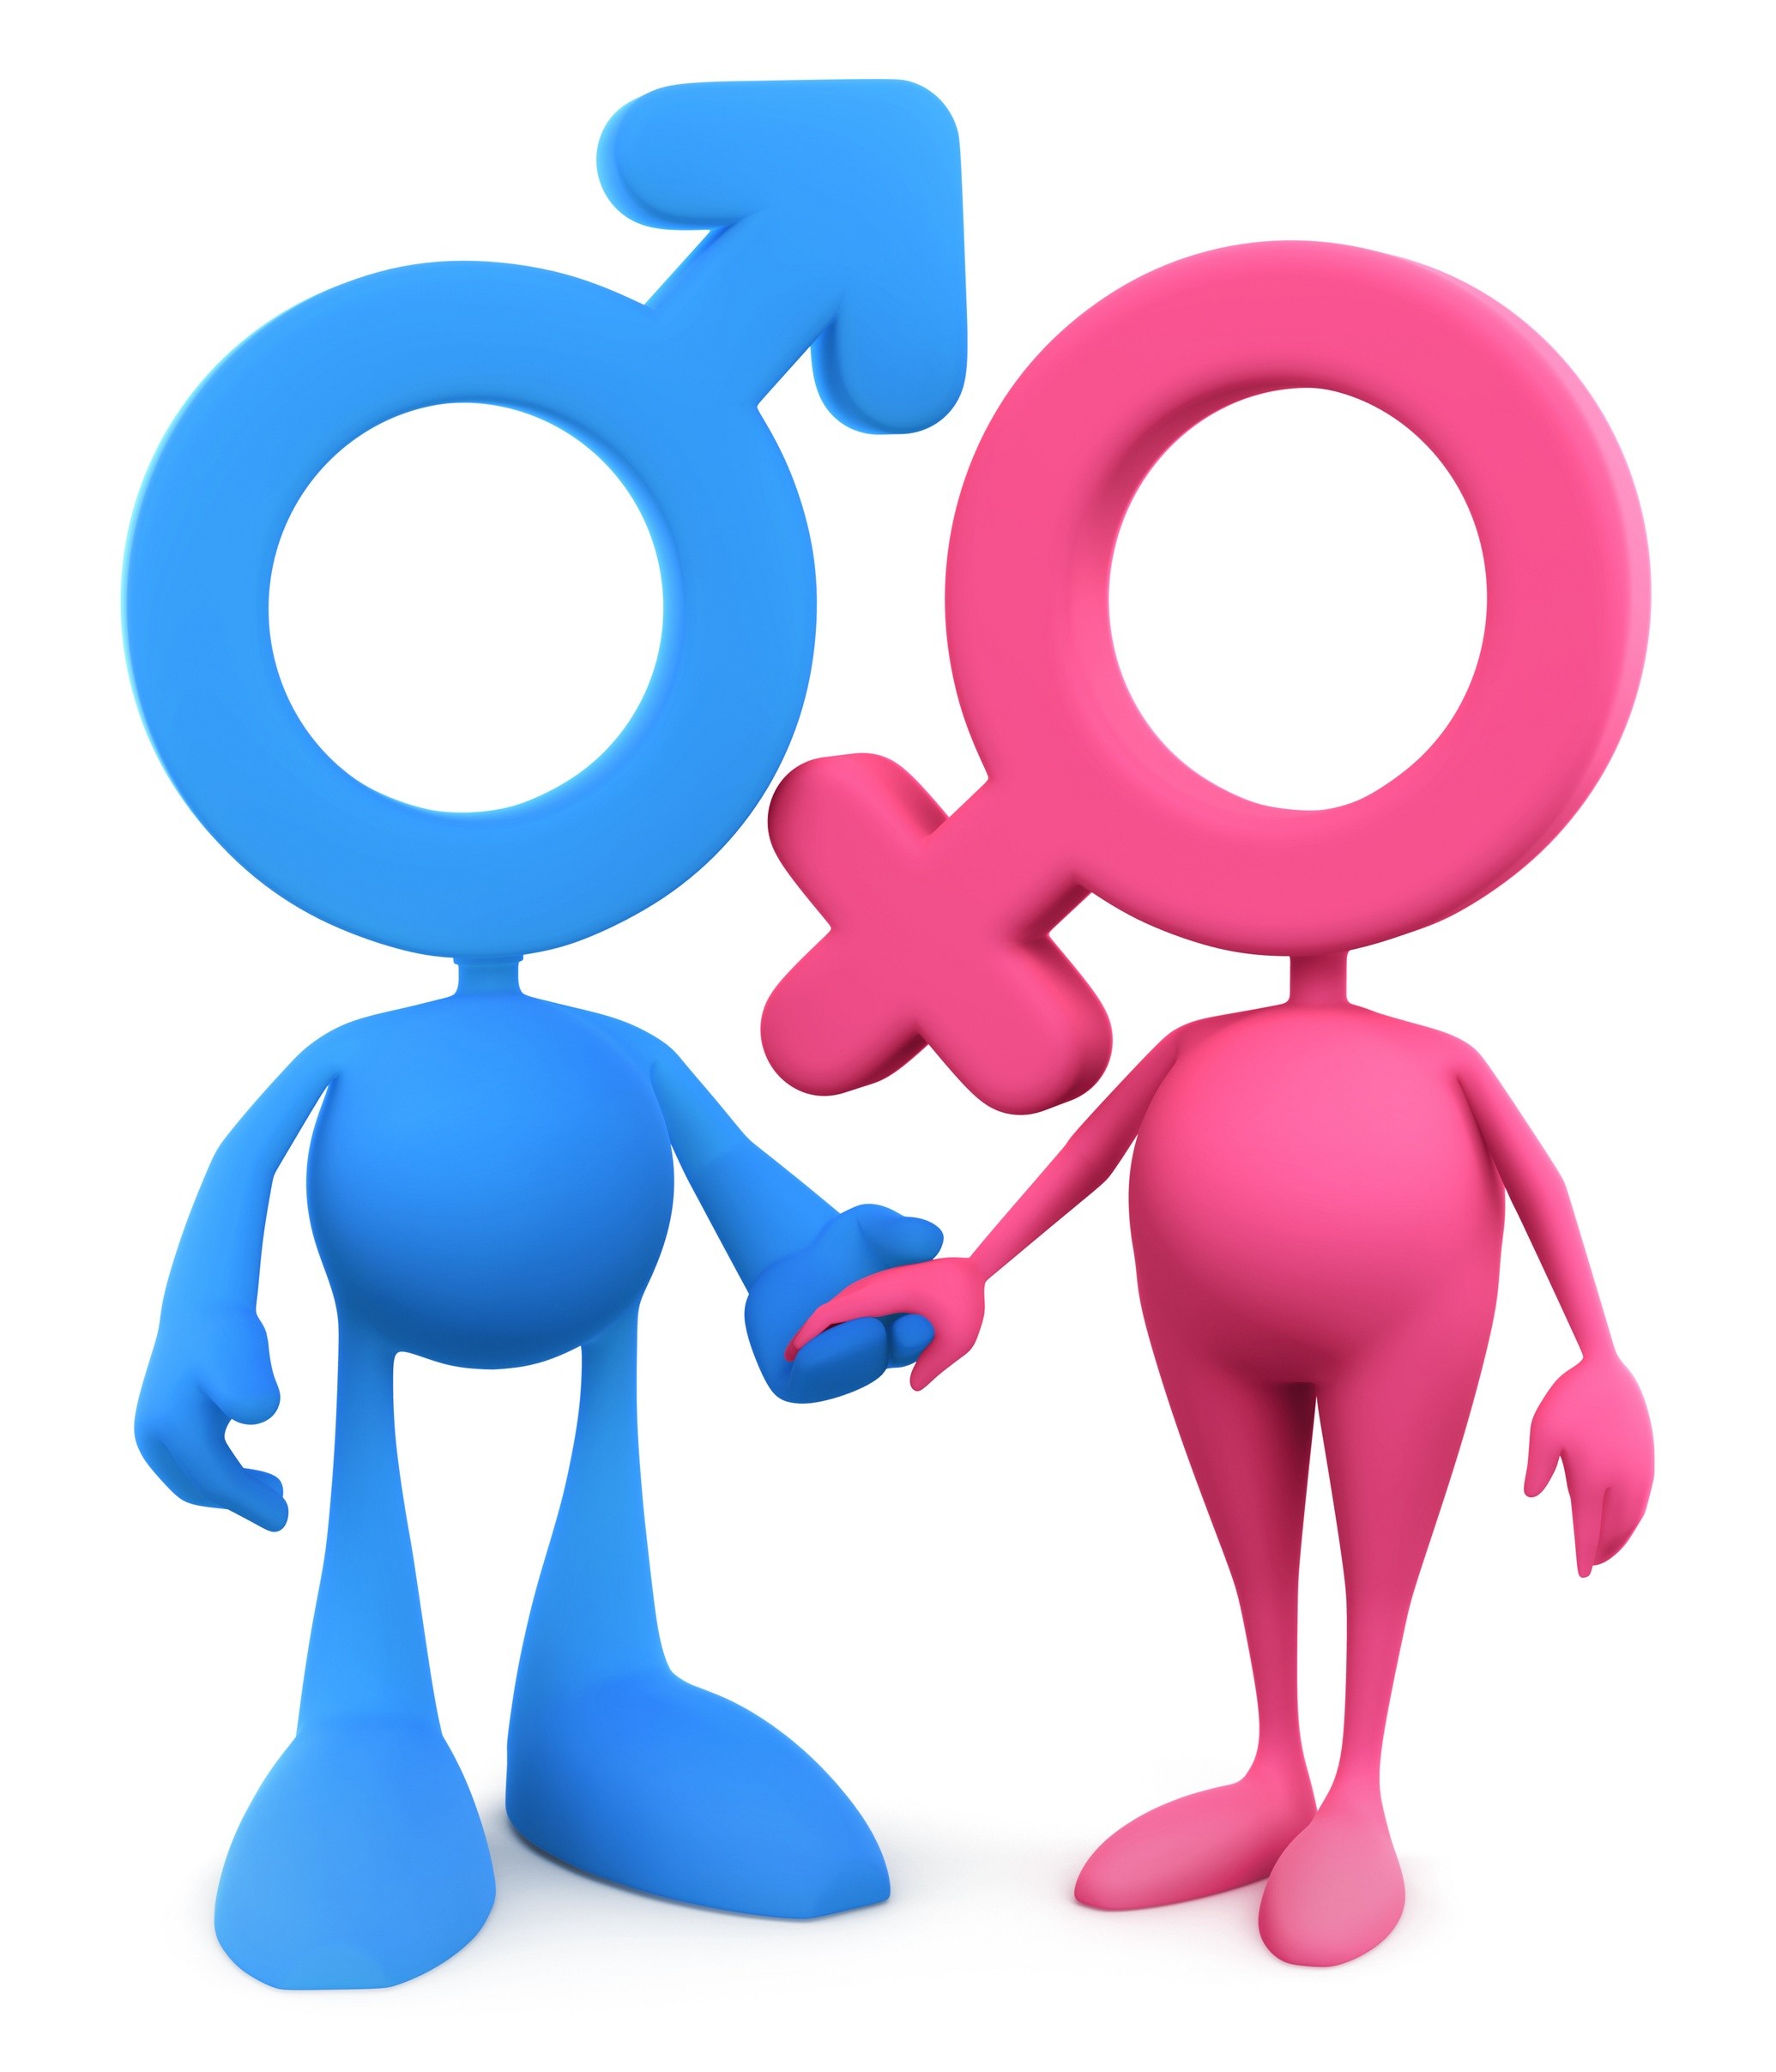 Половые контакты у мужчин. Пол мужской и женский. Мужской и женский знак. Значки мужского и женского пола. Символ мужчины и женщины.